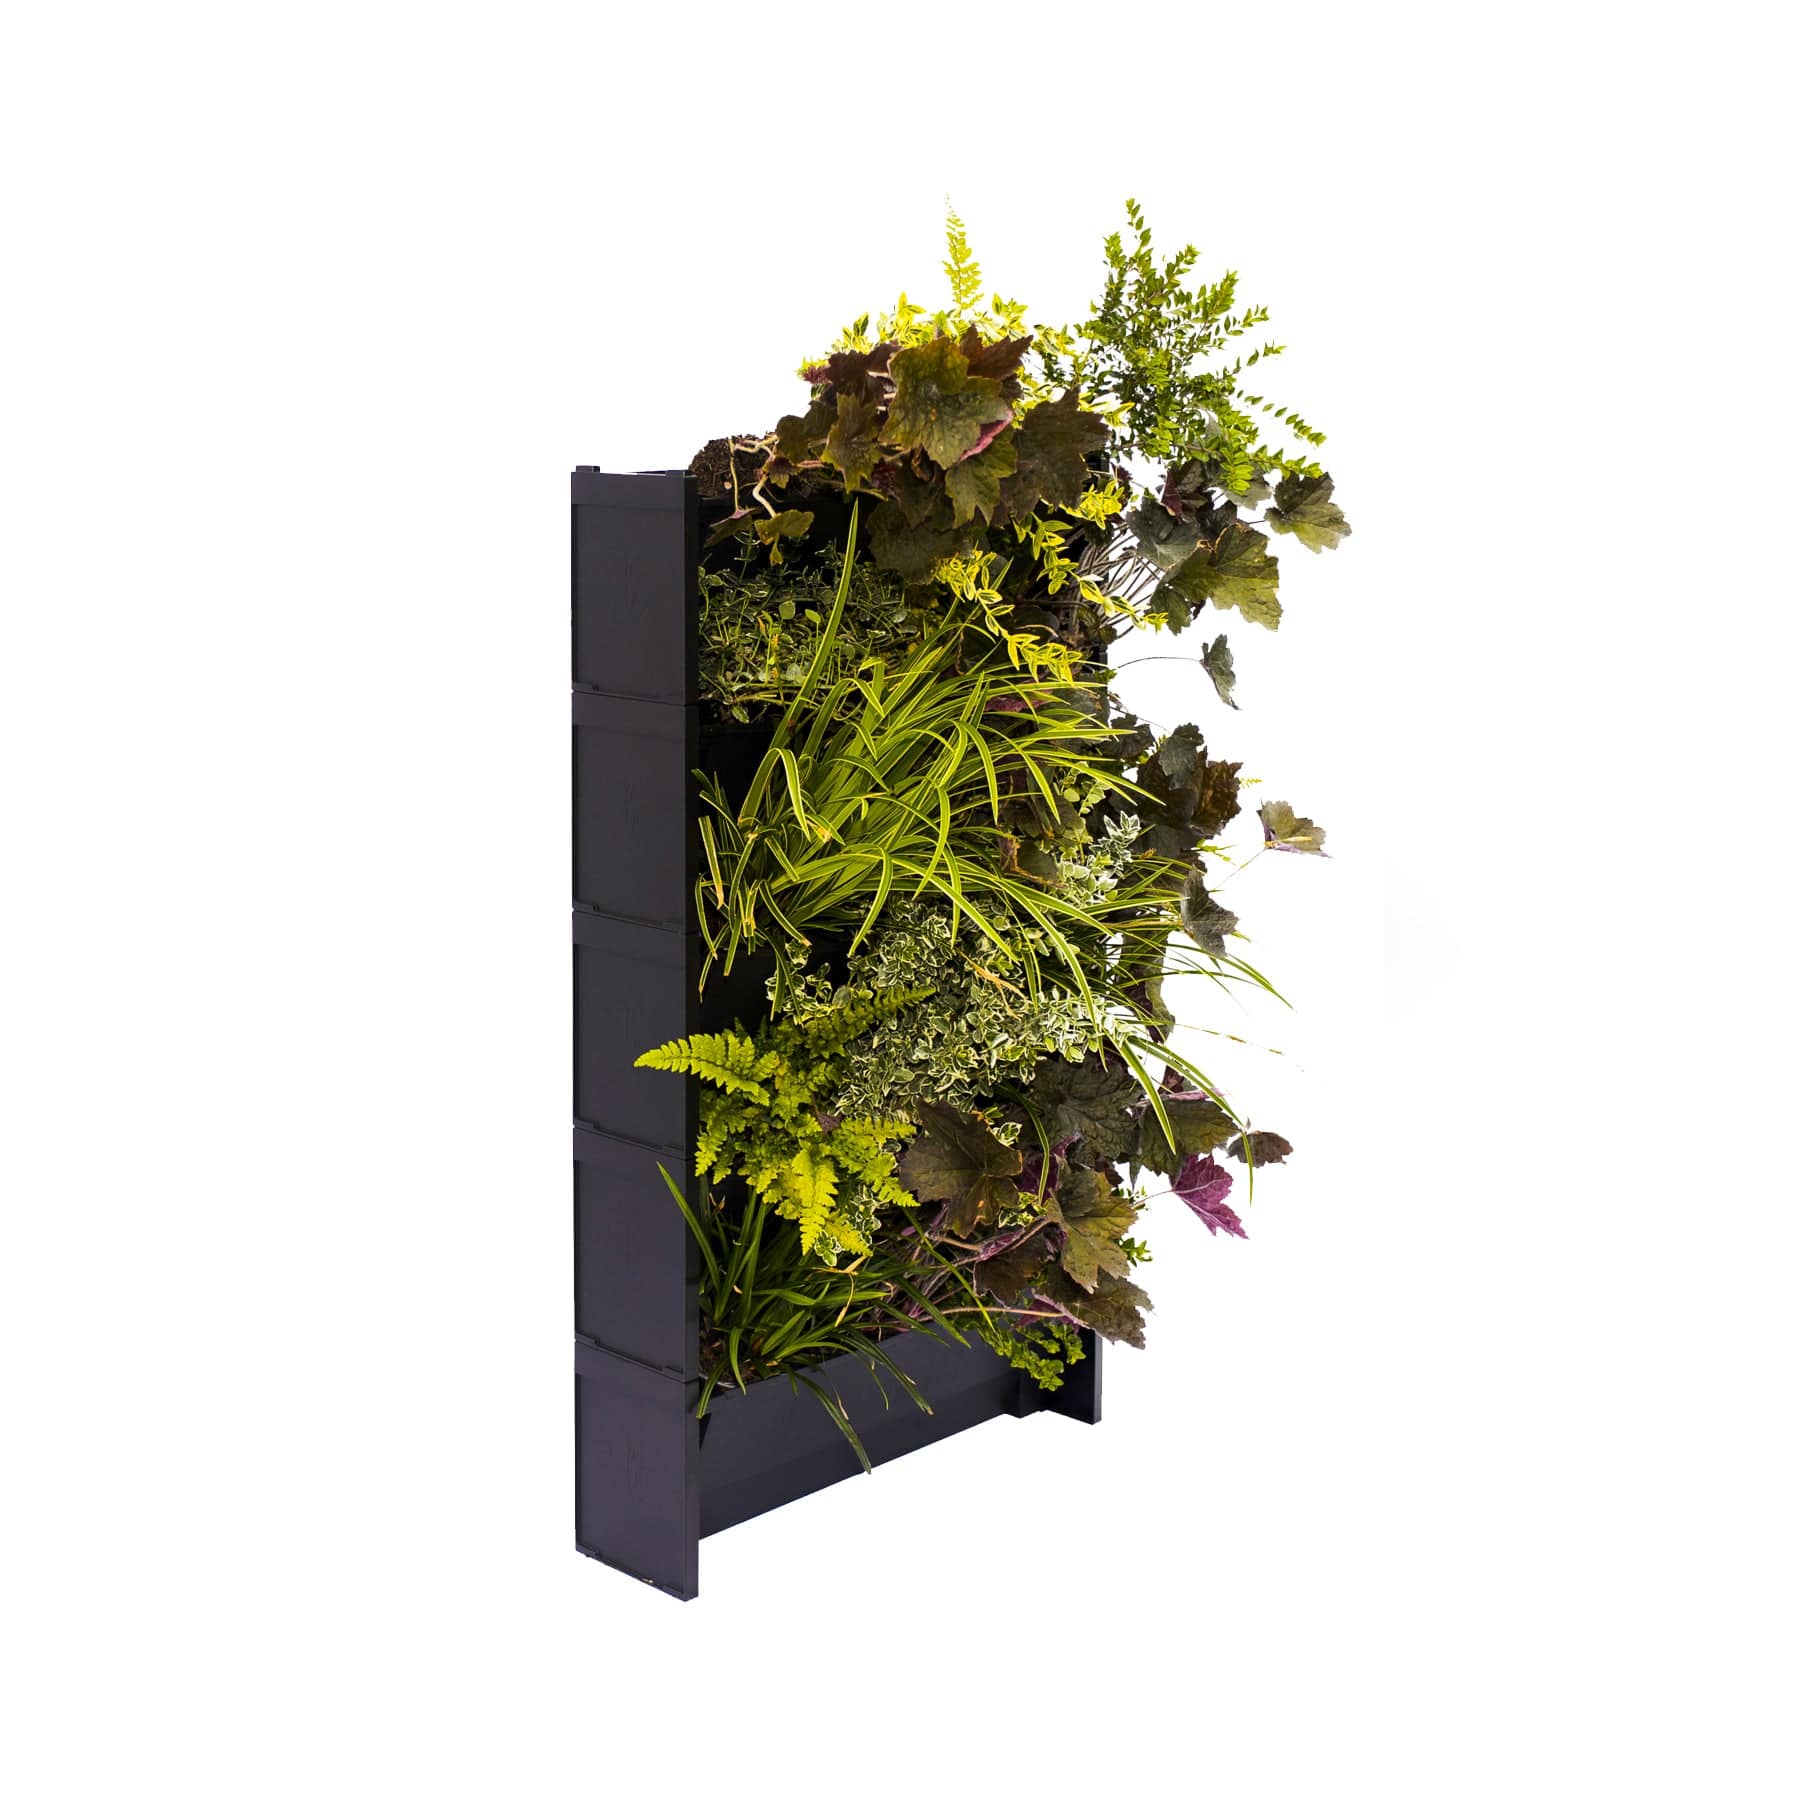 PlantBox vertical planters